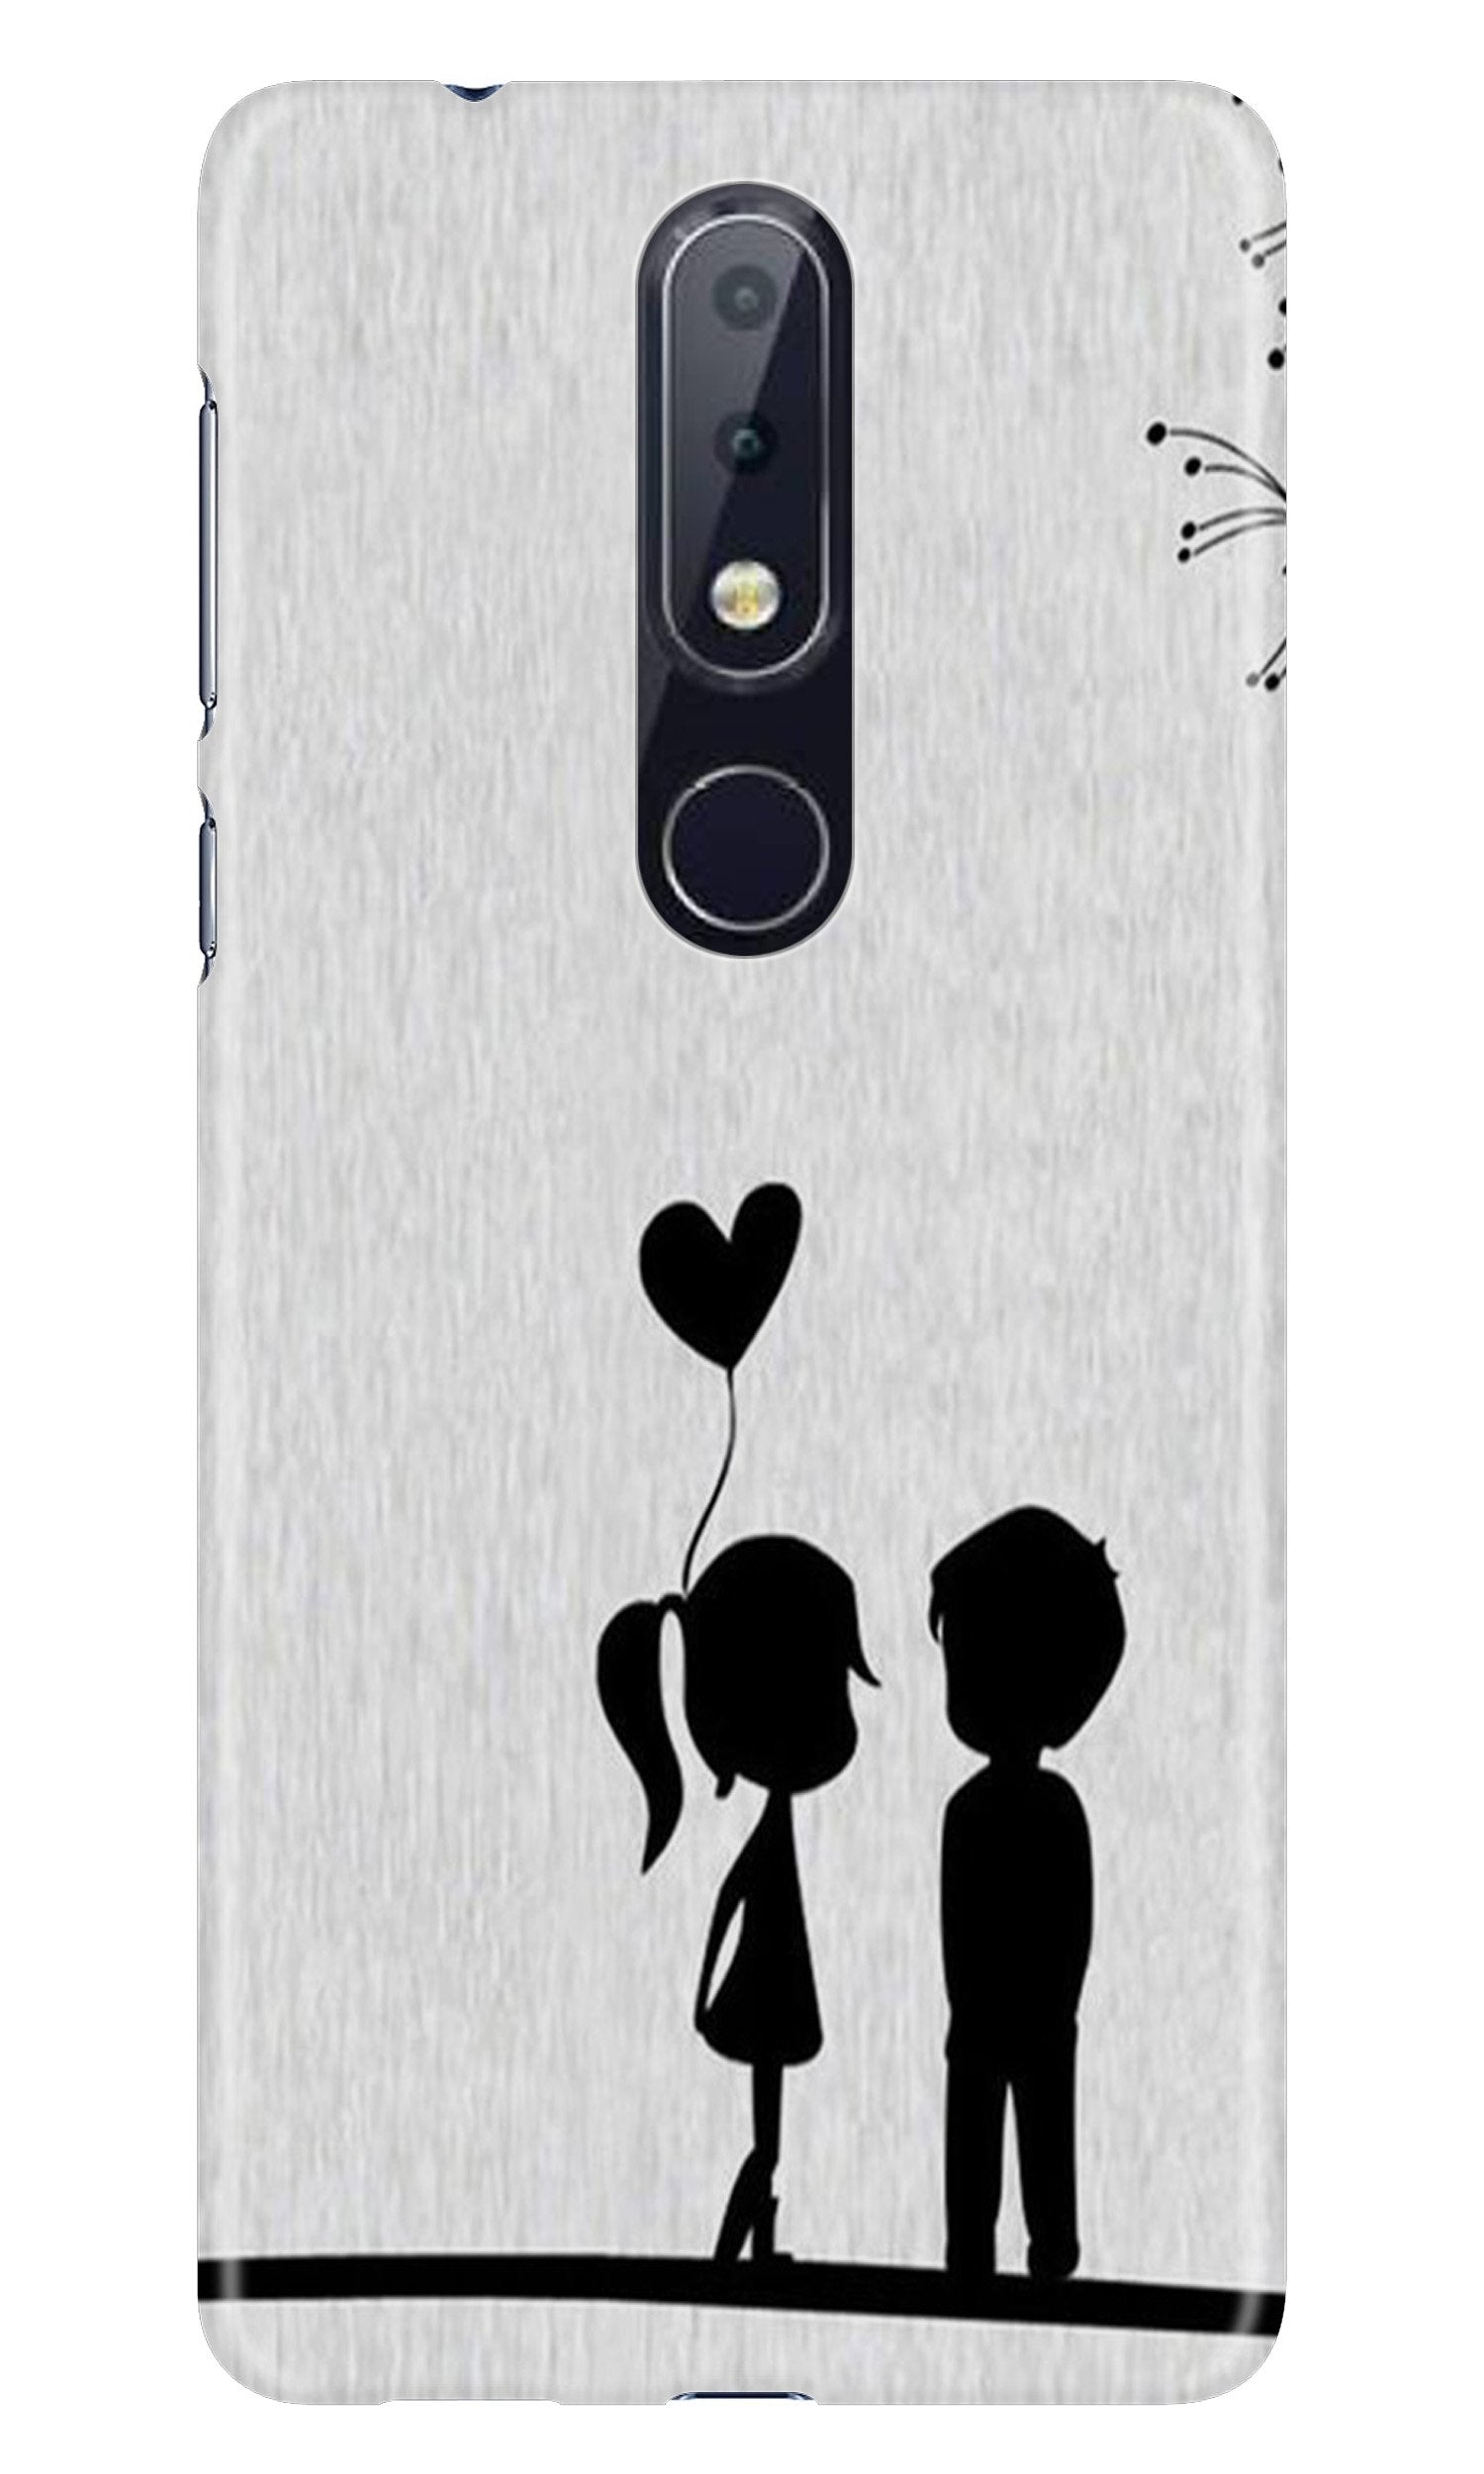 Cute Kid Couple Case for Nokia 4.2 (Design No. 283)